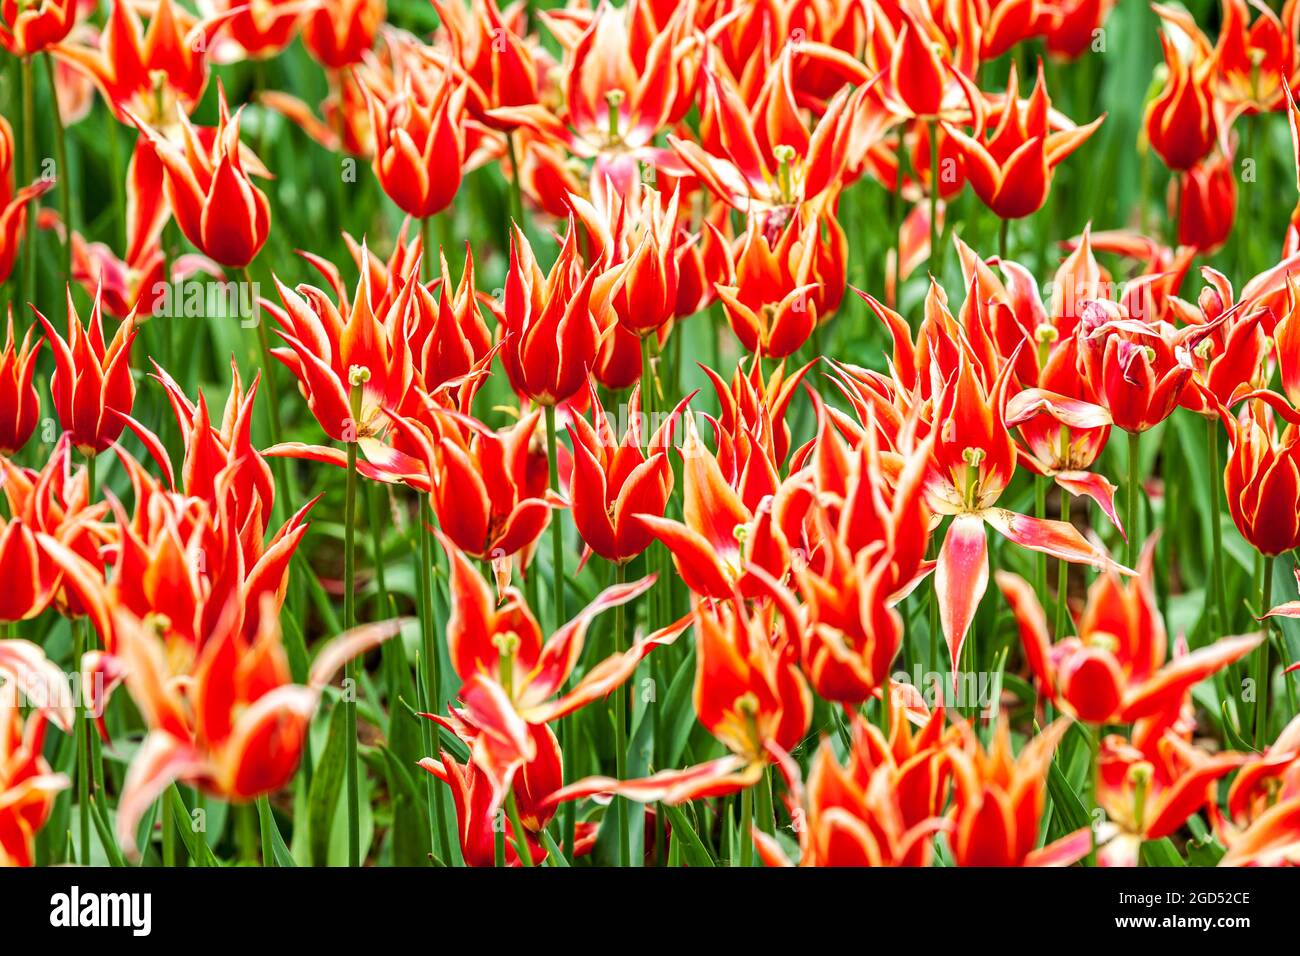 Ottomanische Tulpen. Wunderschöne bunte rote Blumen, lebhafter floraler Hintergrund, Blumenfelder in Istanbul - Gulhane Park Stockfoto